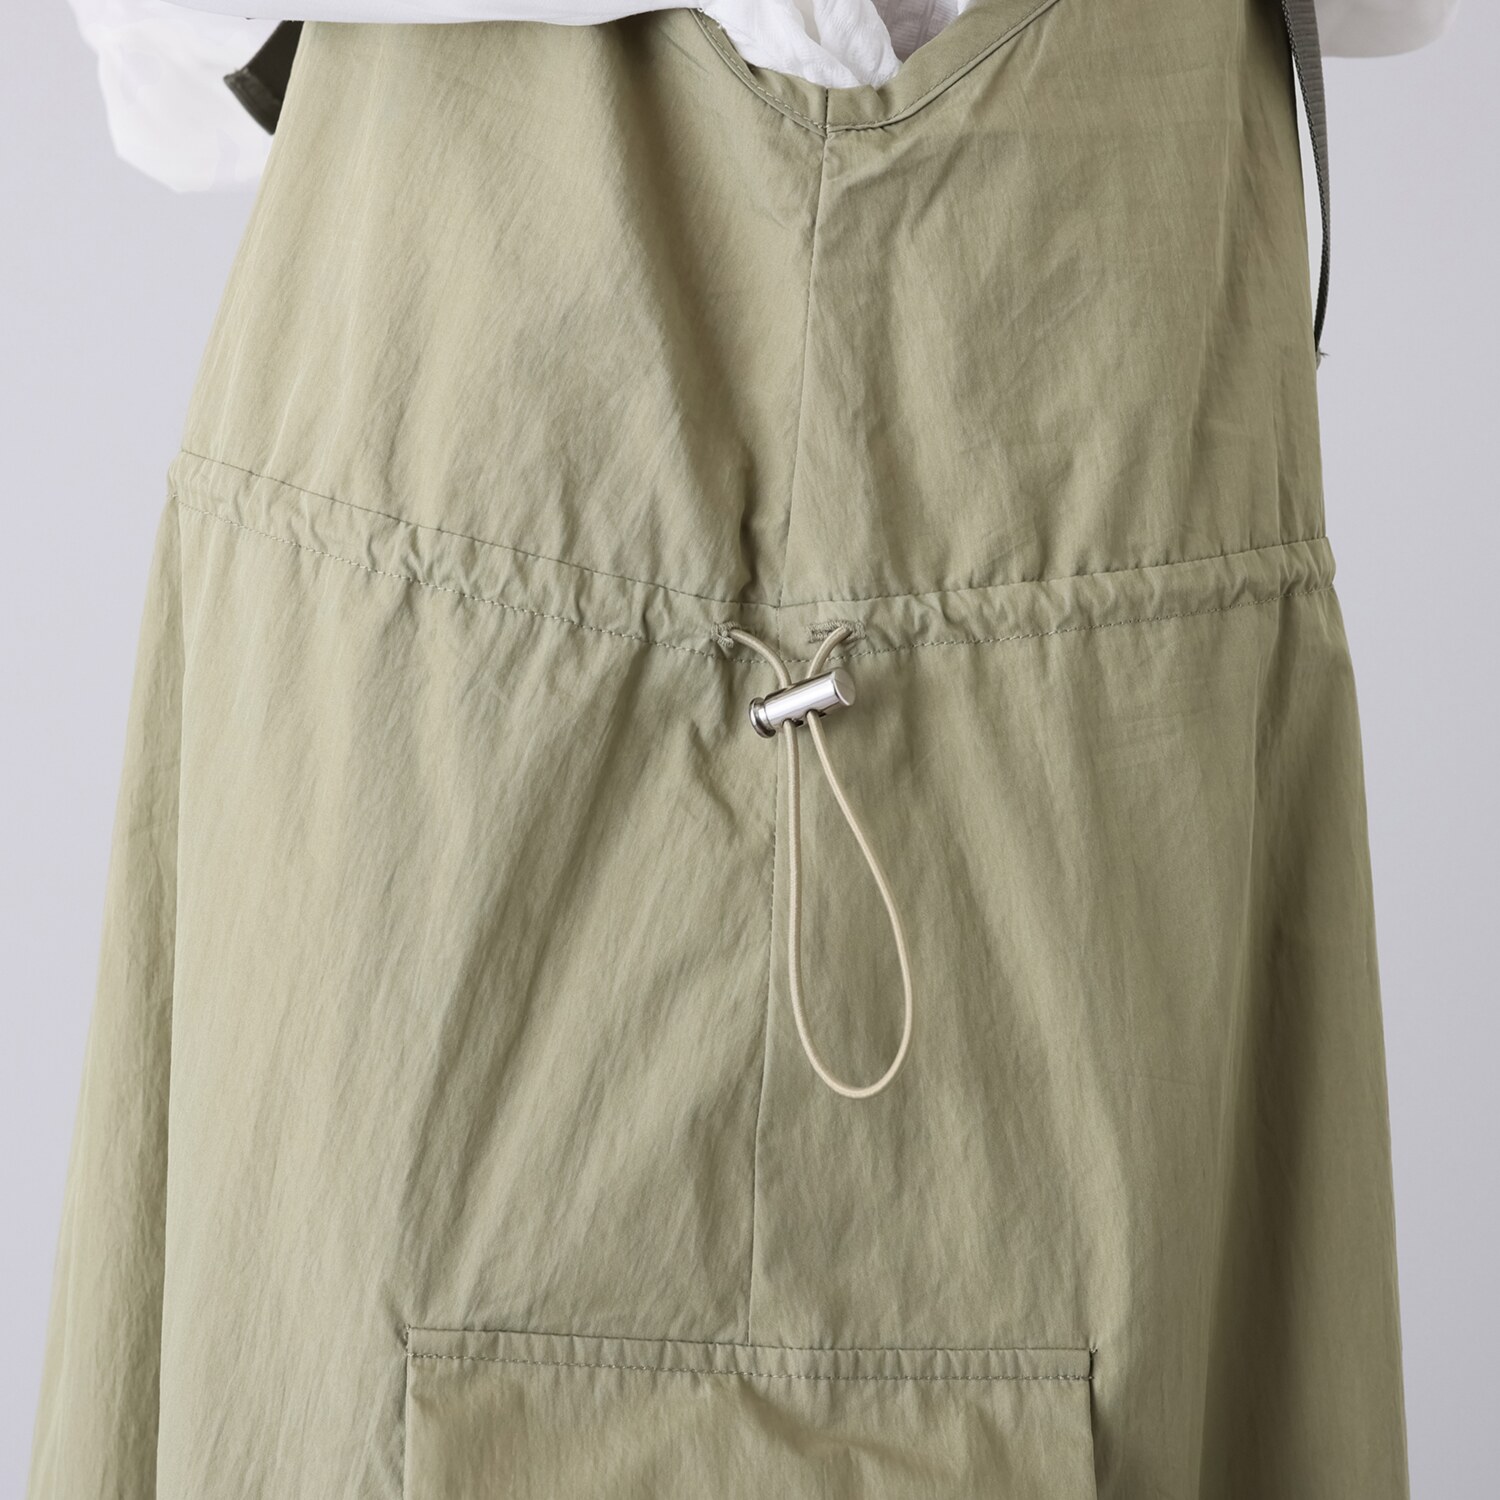 エムズ　スタイル ビンテージ風綿ナイロン 配色肩ベルト カーゴデザイン ジャンパースカート